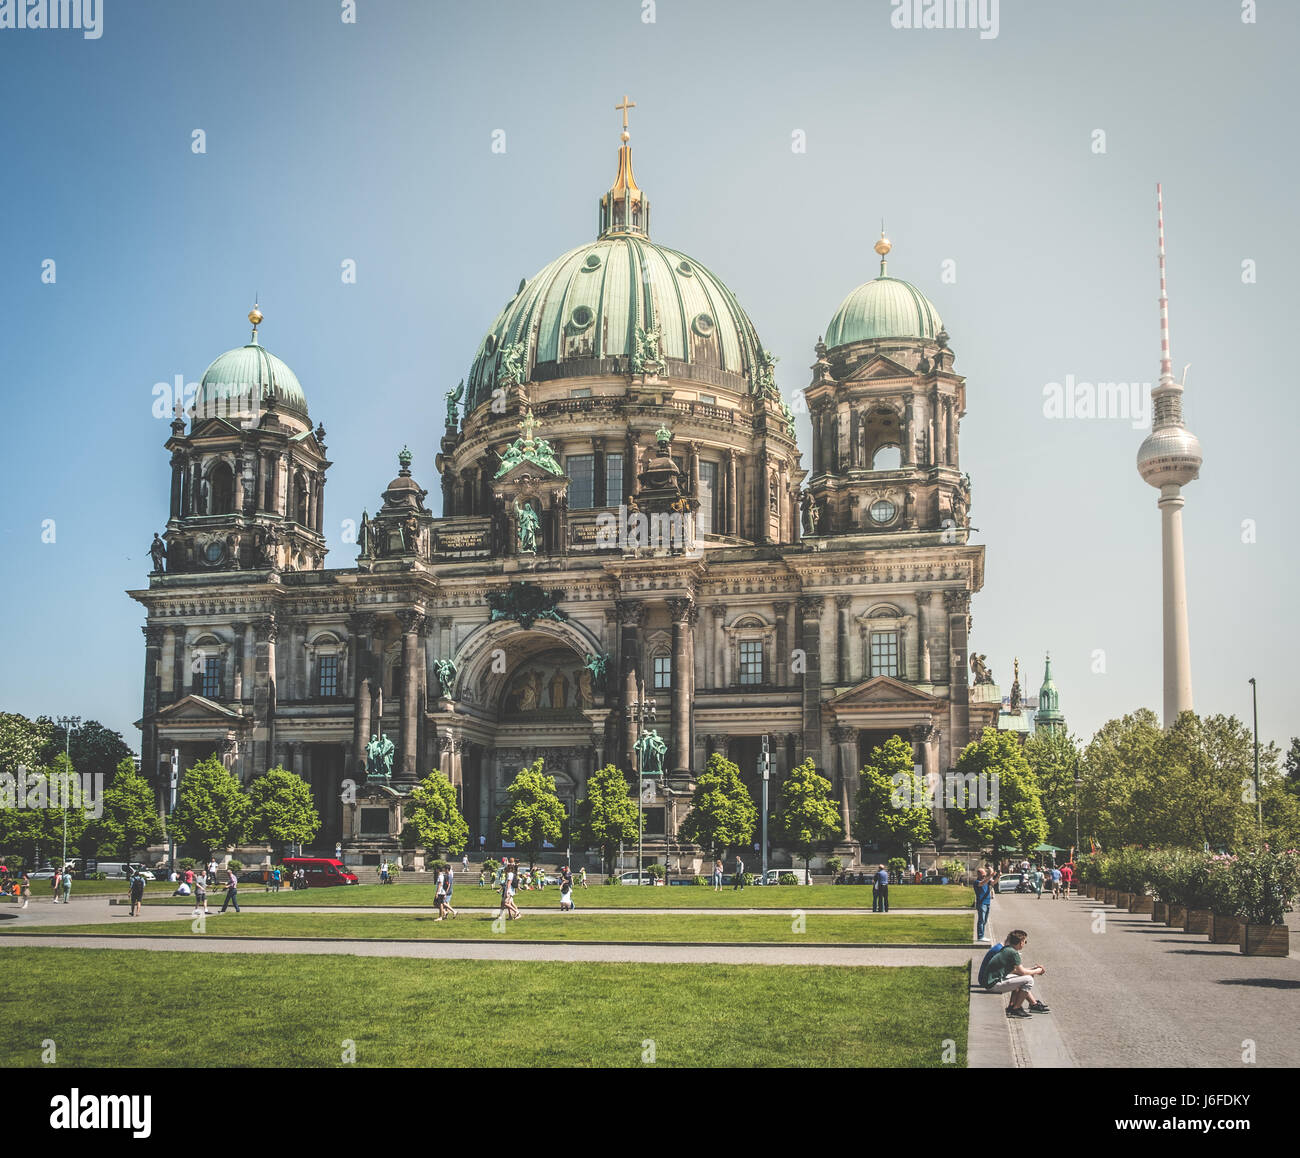 Berlin, Deutschland - 19. Mai 2017: der Berliner Dom (Berliner Dom) und Fernsehturm (Fernsehturm) in Berlin, Deutschland. Stockfoto